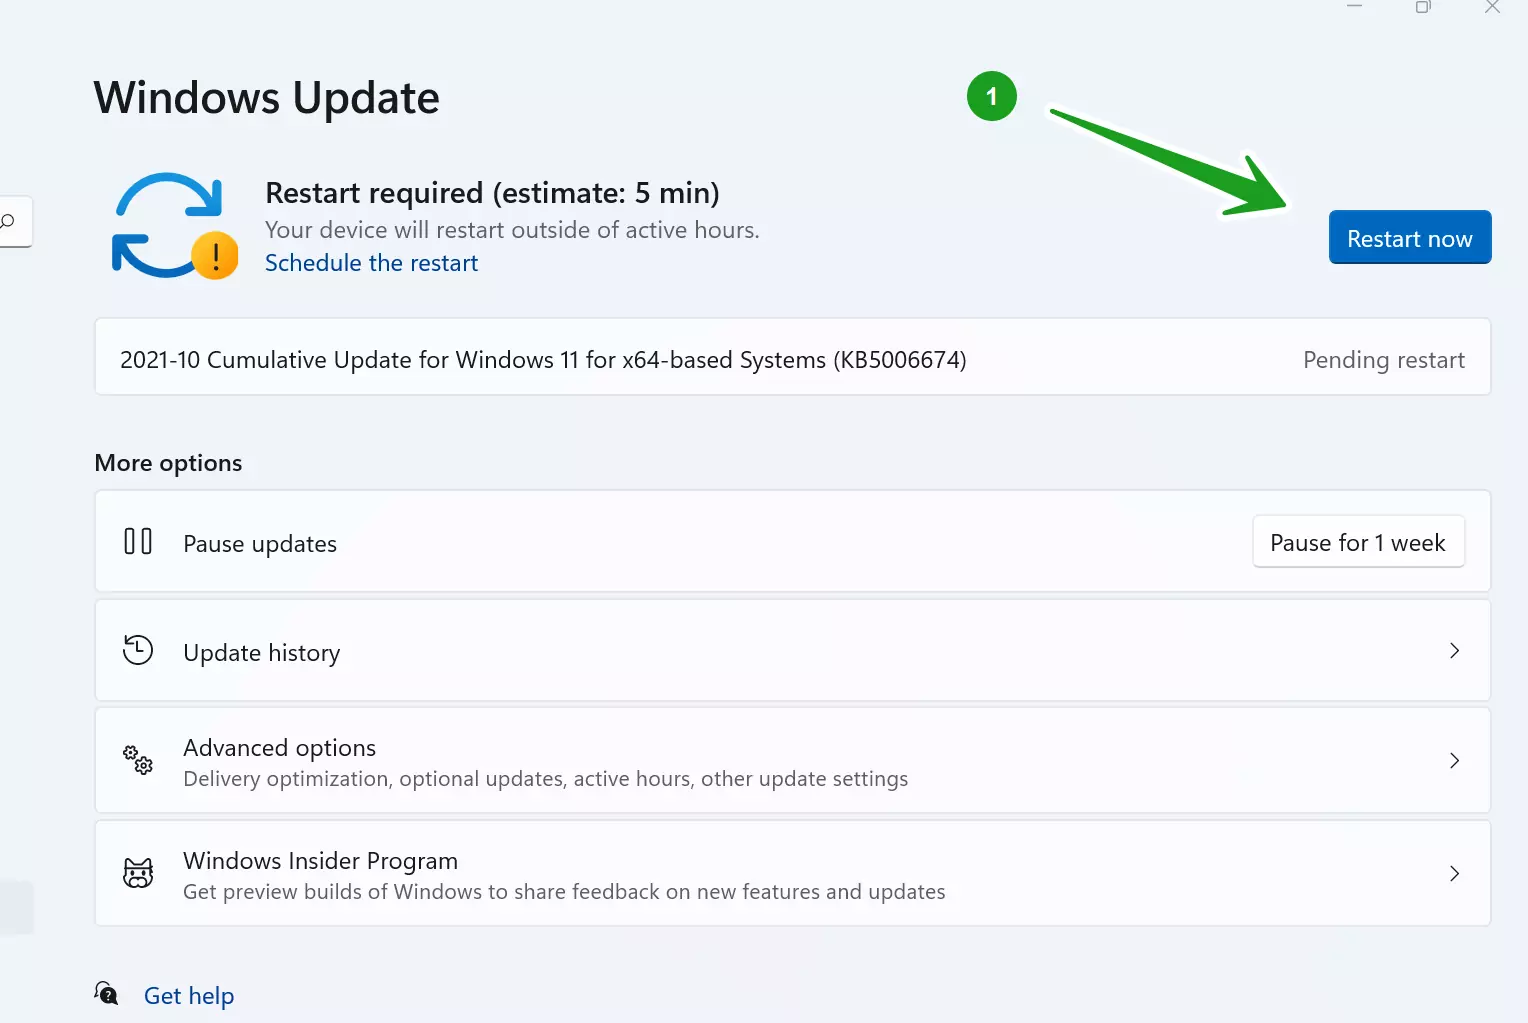 Windows 11 Update Restart Now